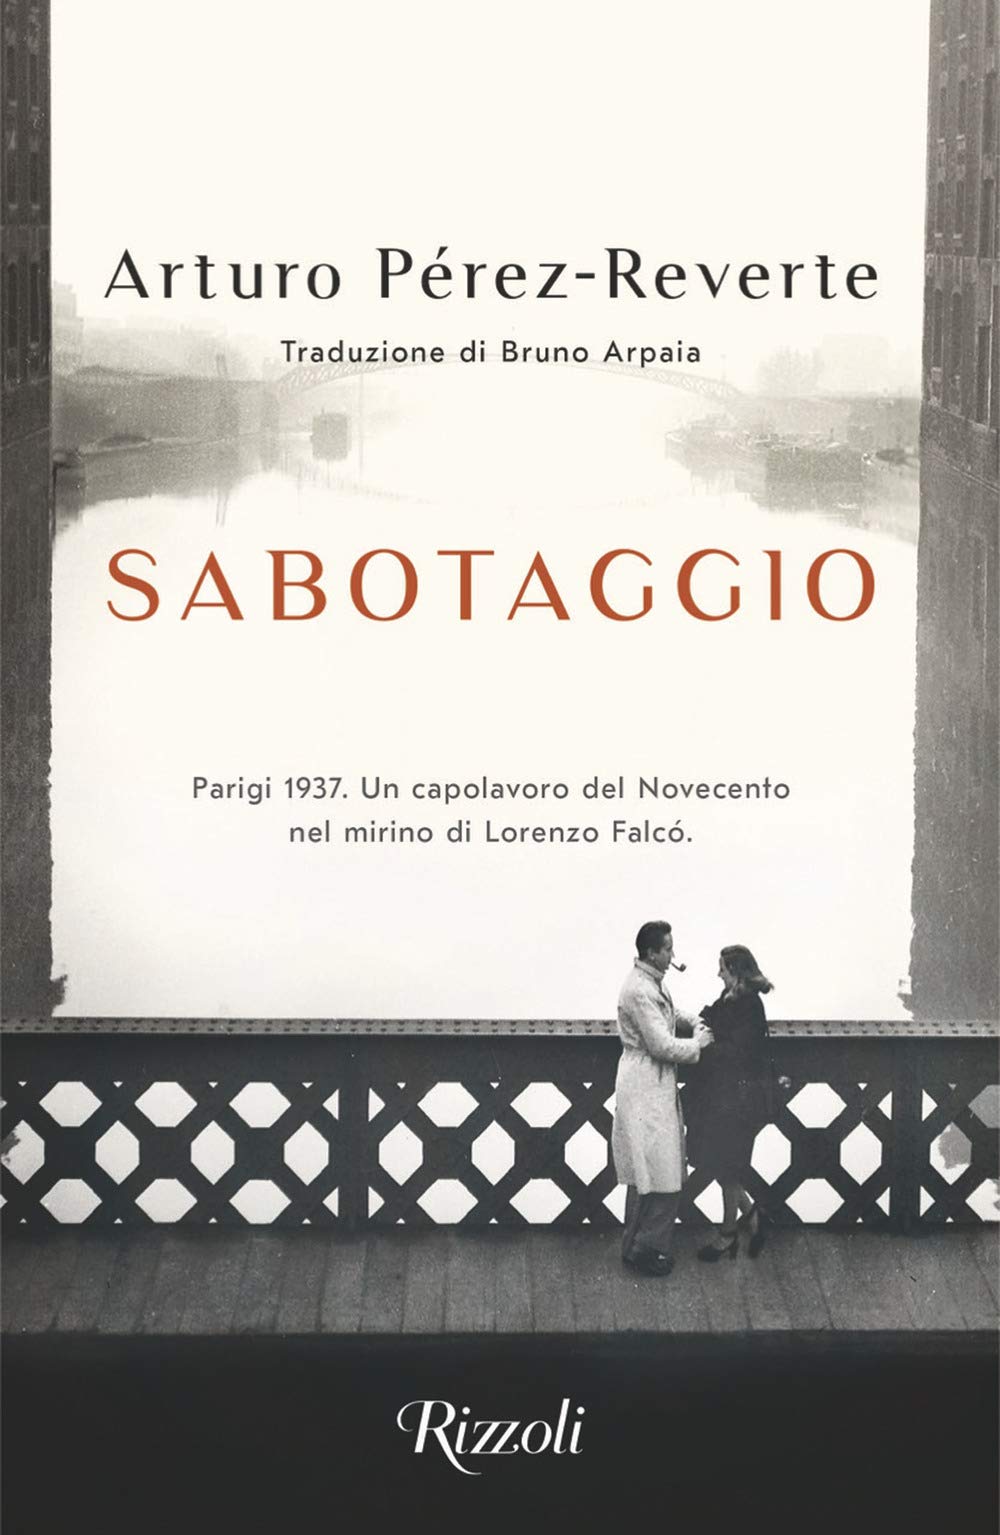 Recensione di Sabotaggio – Arturo Pérez-Reverte